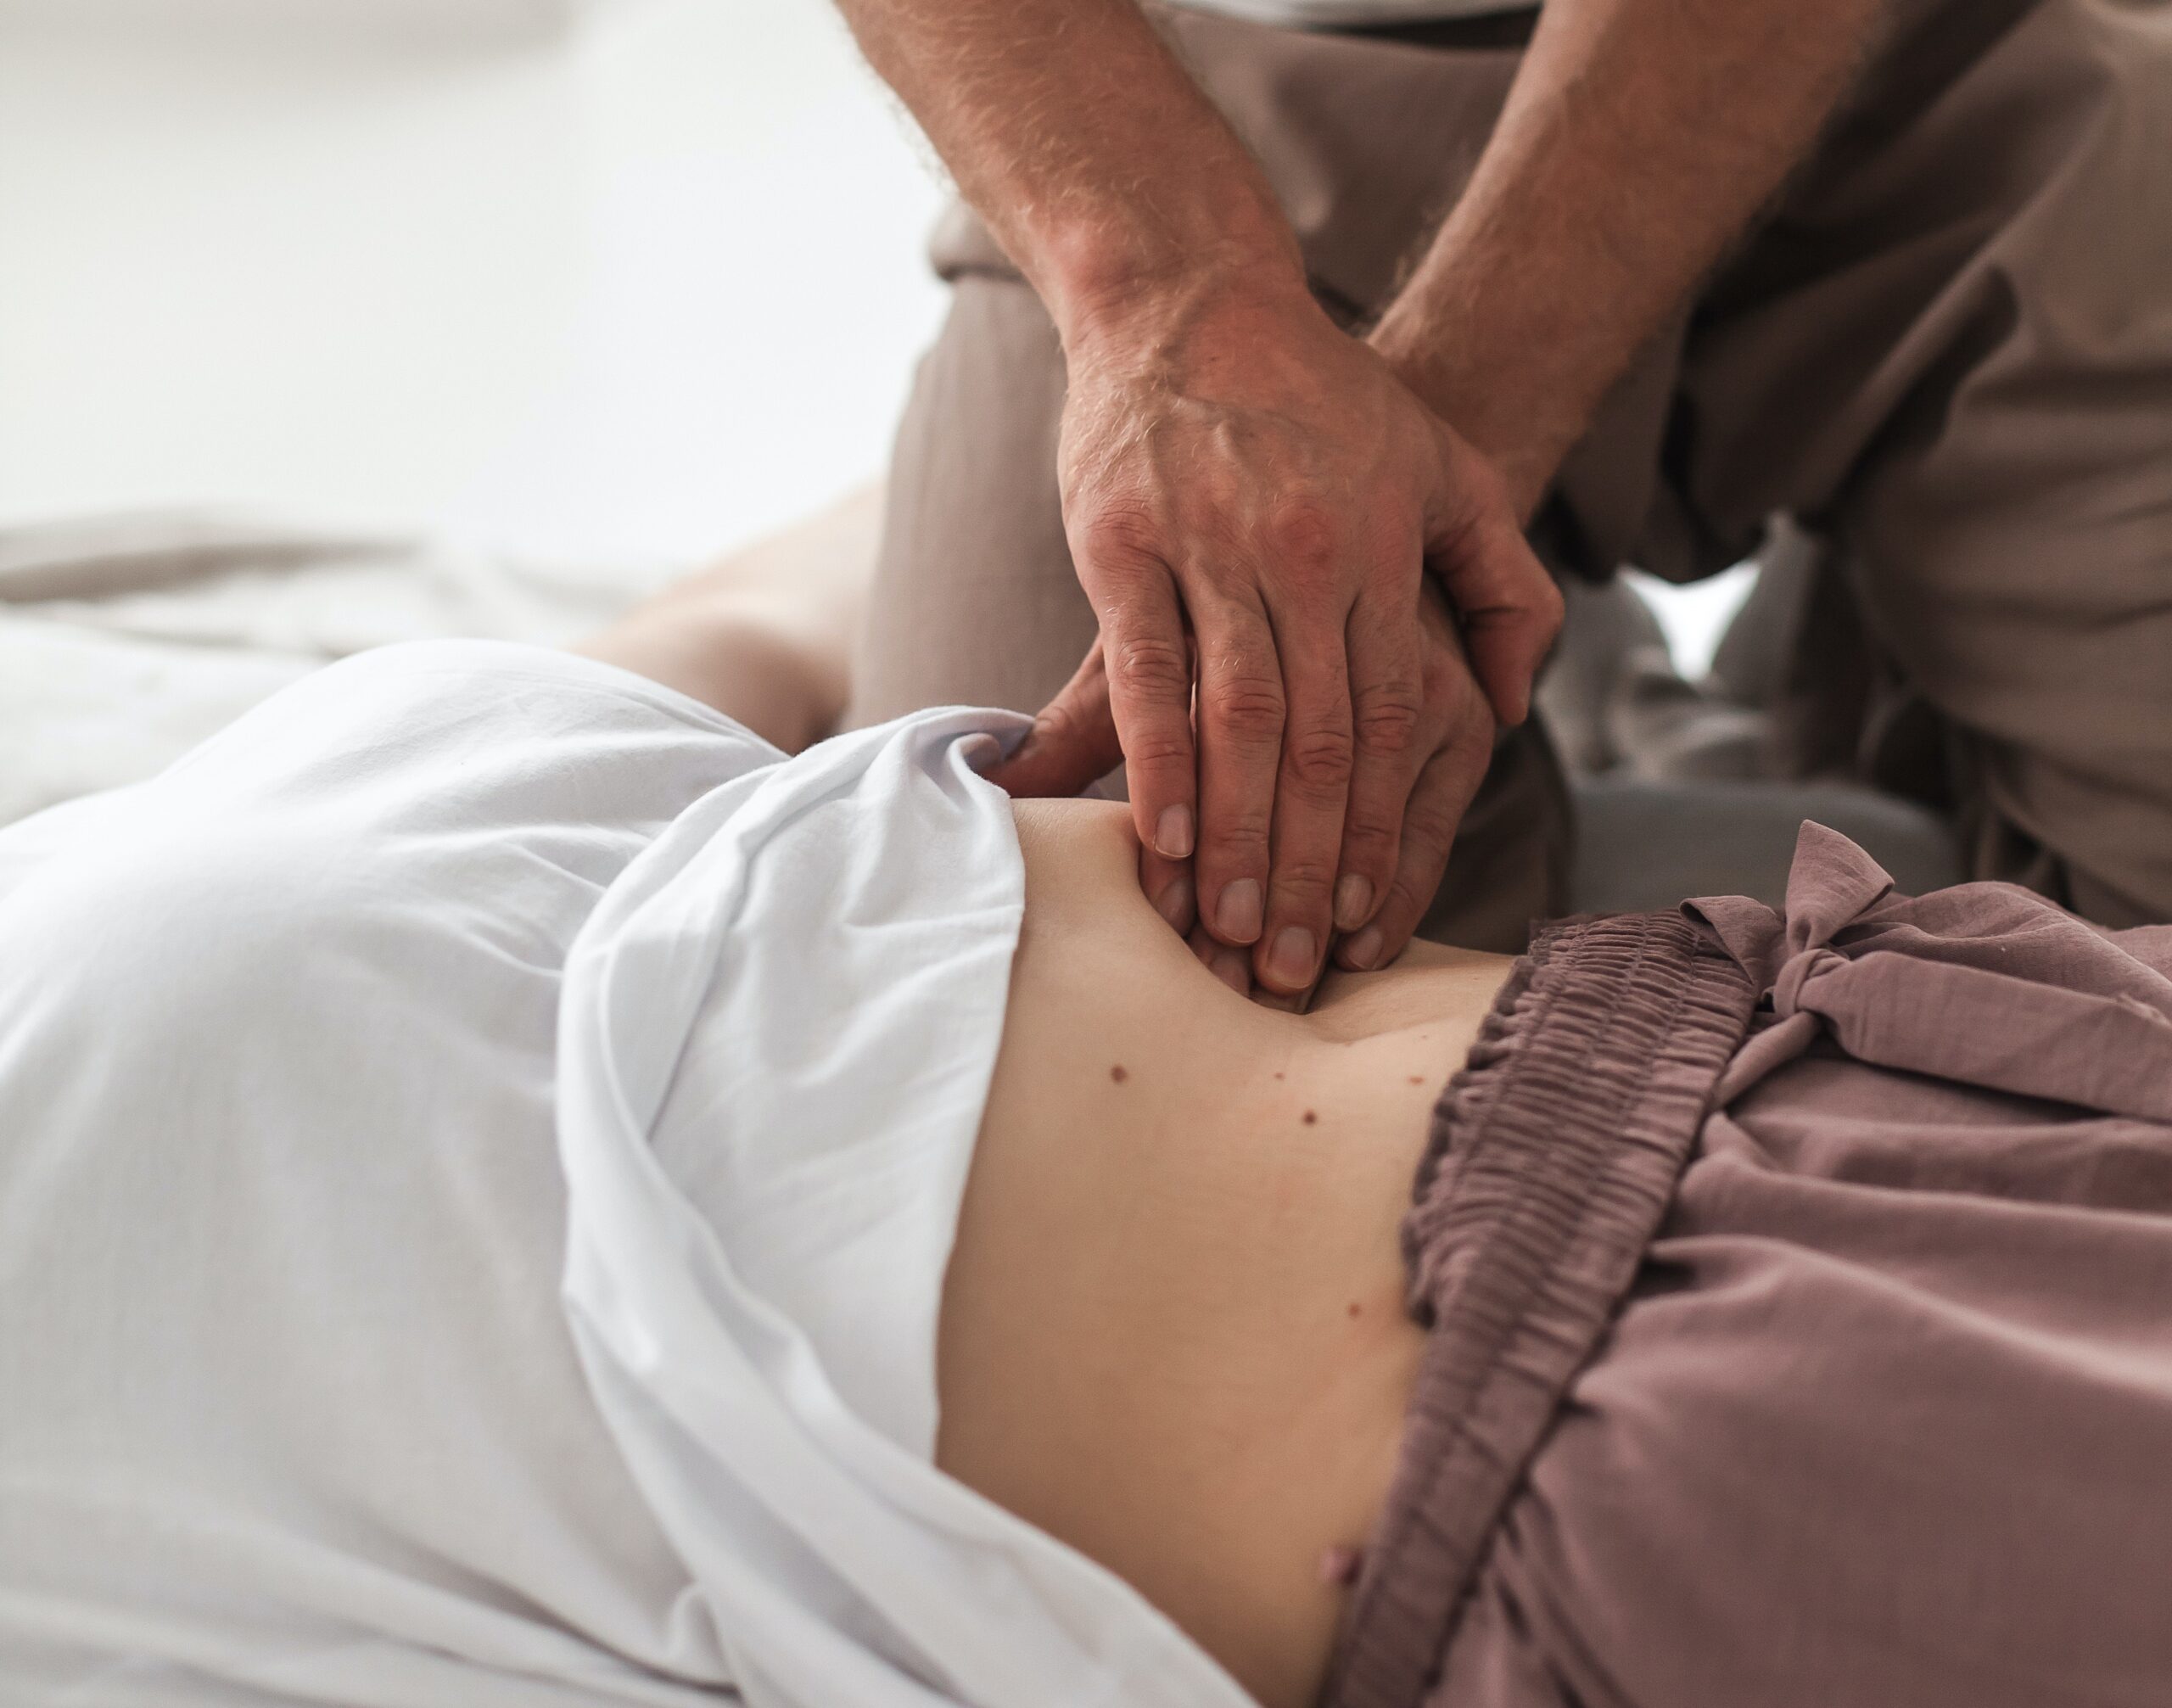 Unlocking the Benefits of Shiatsu Massage